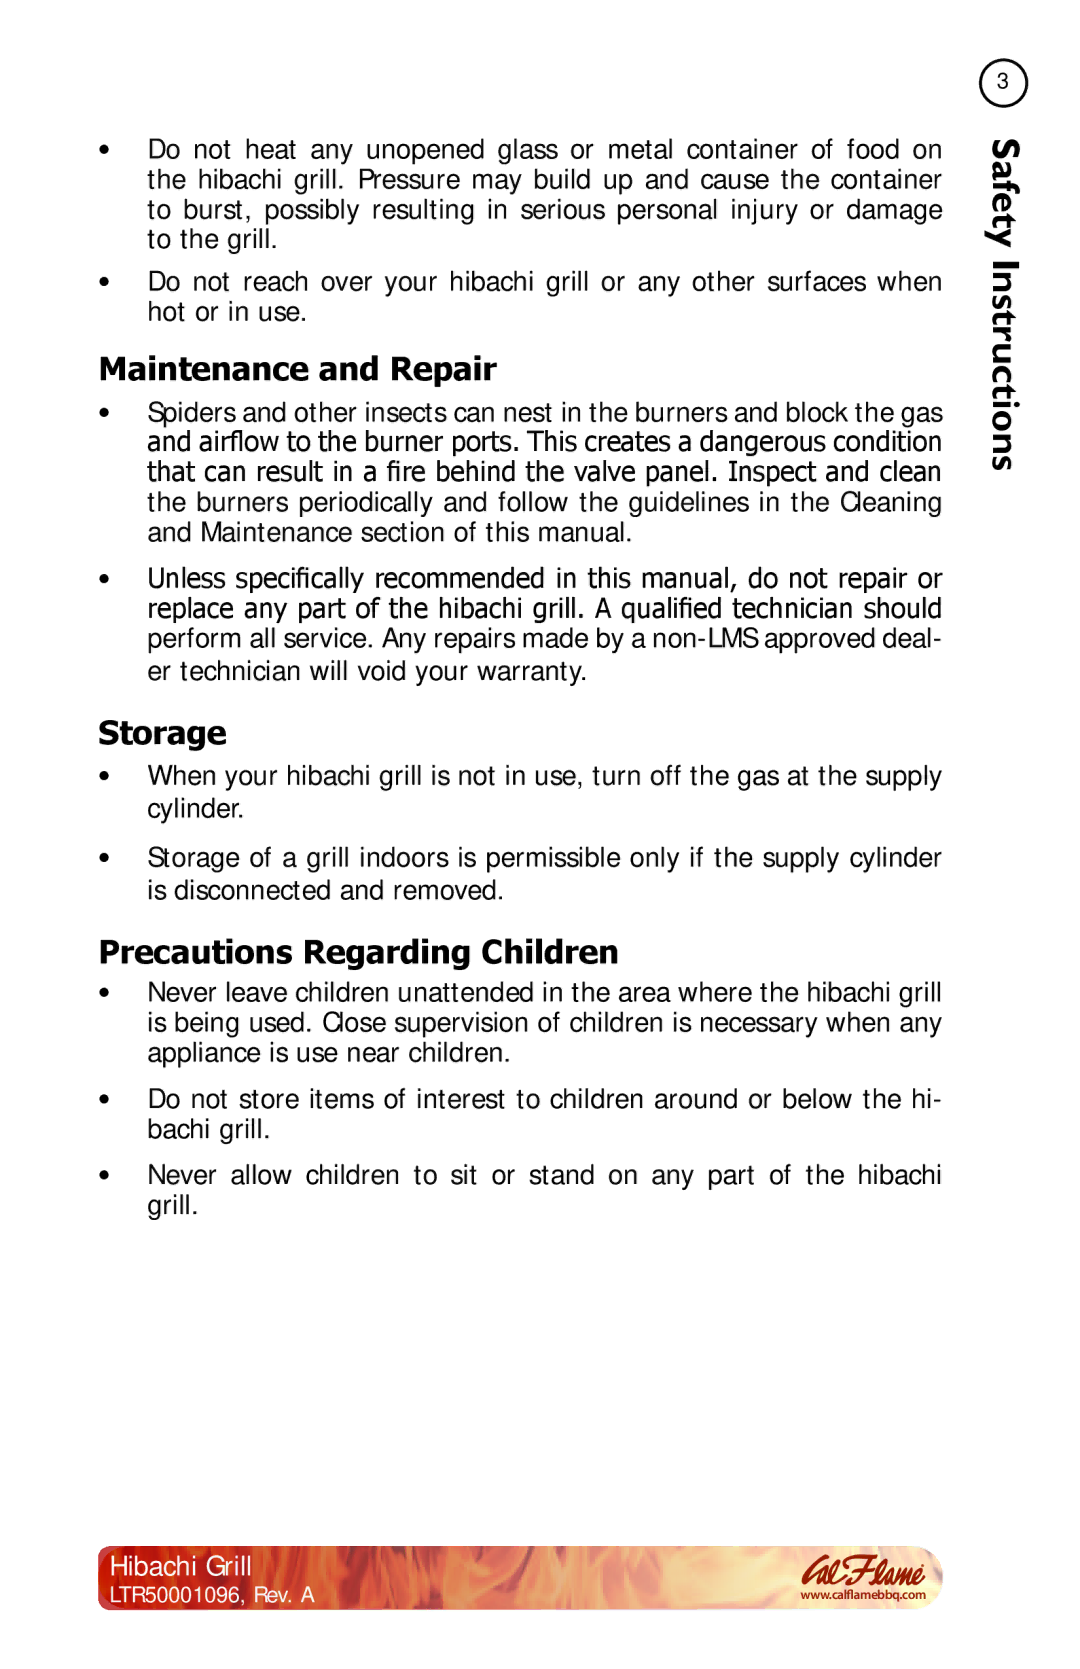 Cal Flame BBQ10900 manual Maintenance and Repair, Storage, Precautions Regarding Children 